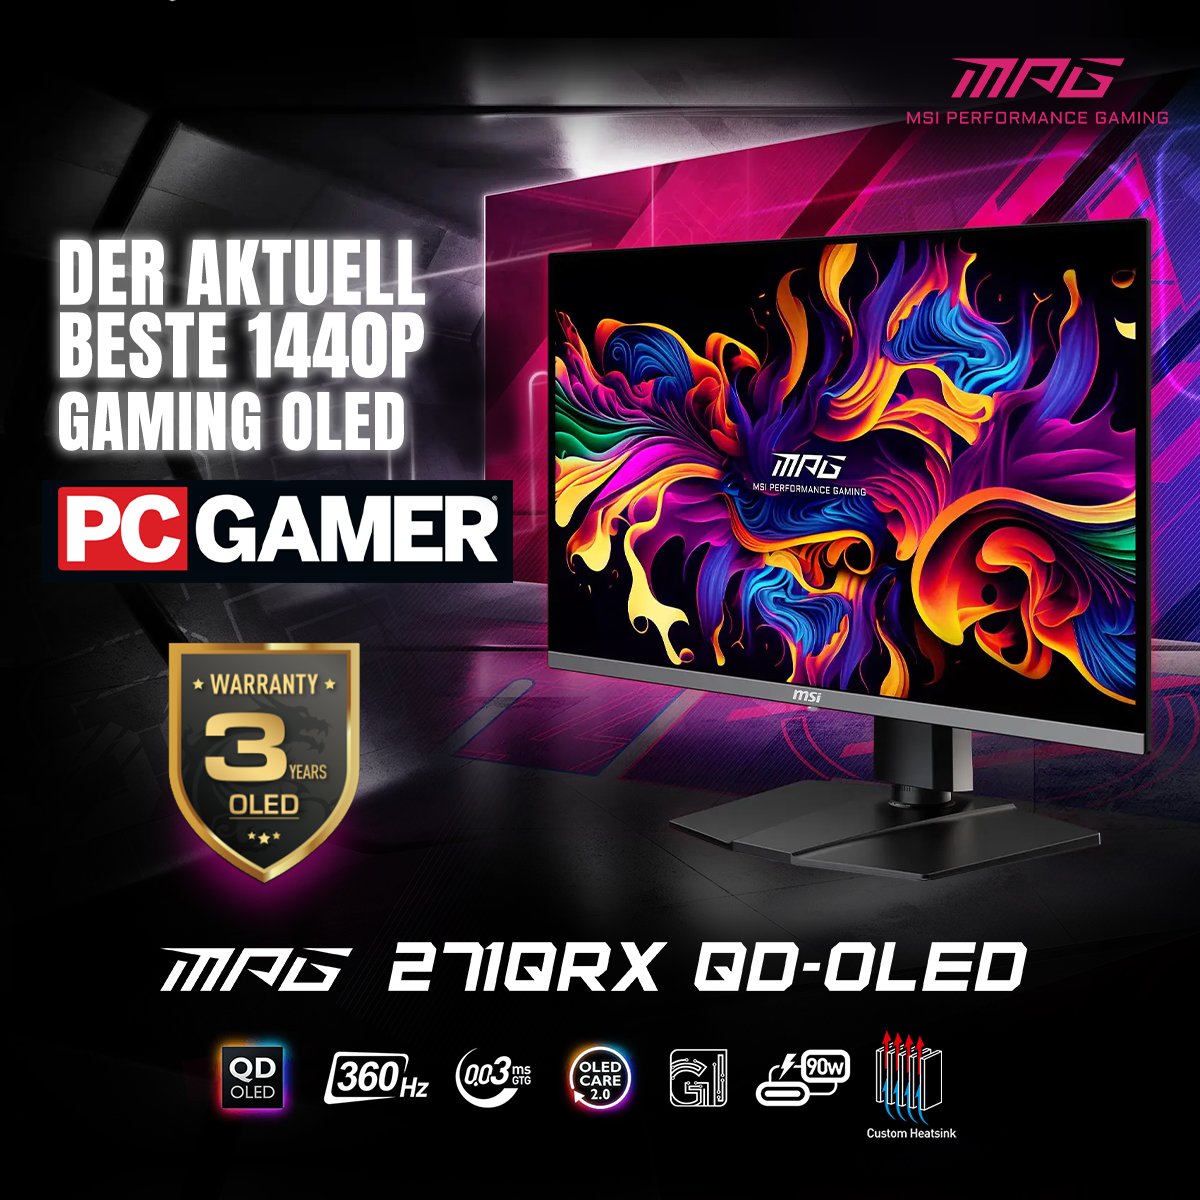 Begib dich auf eine epische Gaming-Reise mit unserem MPG 271QRX QD-OLED Monitor, von @pcgamer als Höhepunkt der besten 1440P Gaming-Exzellenz gefeiert. Erlebe immersive Visuals und unerreichte Leistung. Erfahre mehr: msi.gm/SA554929